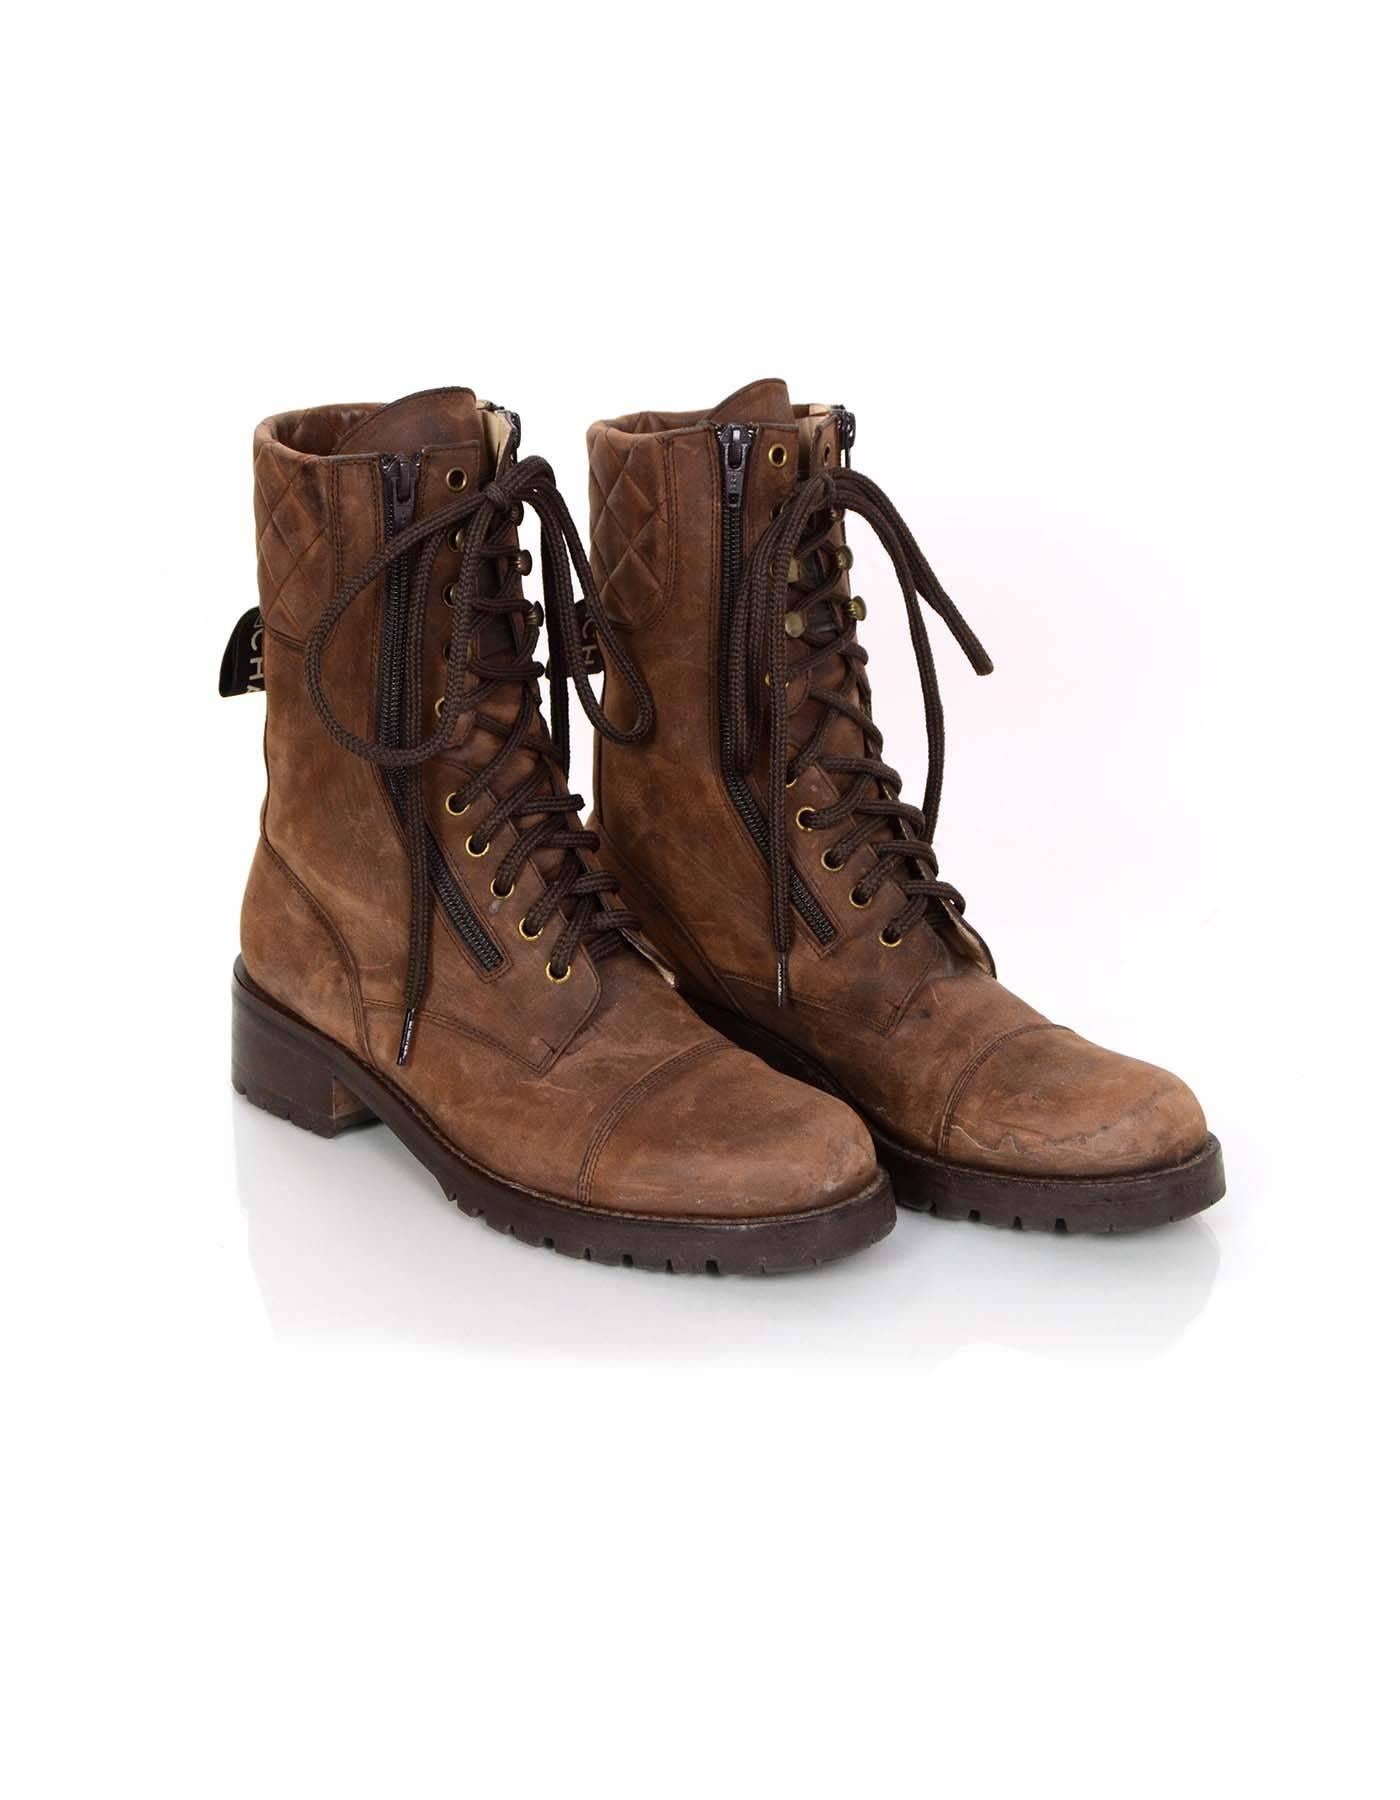 vintage brown combat boots